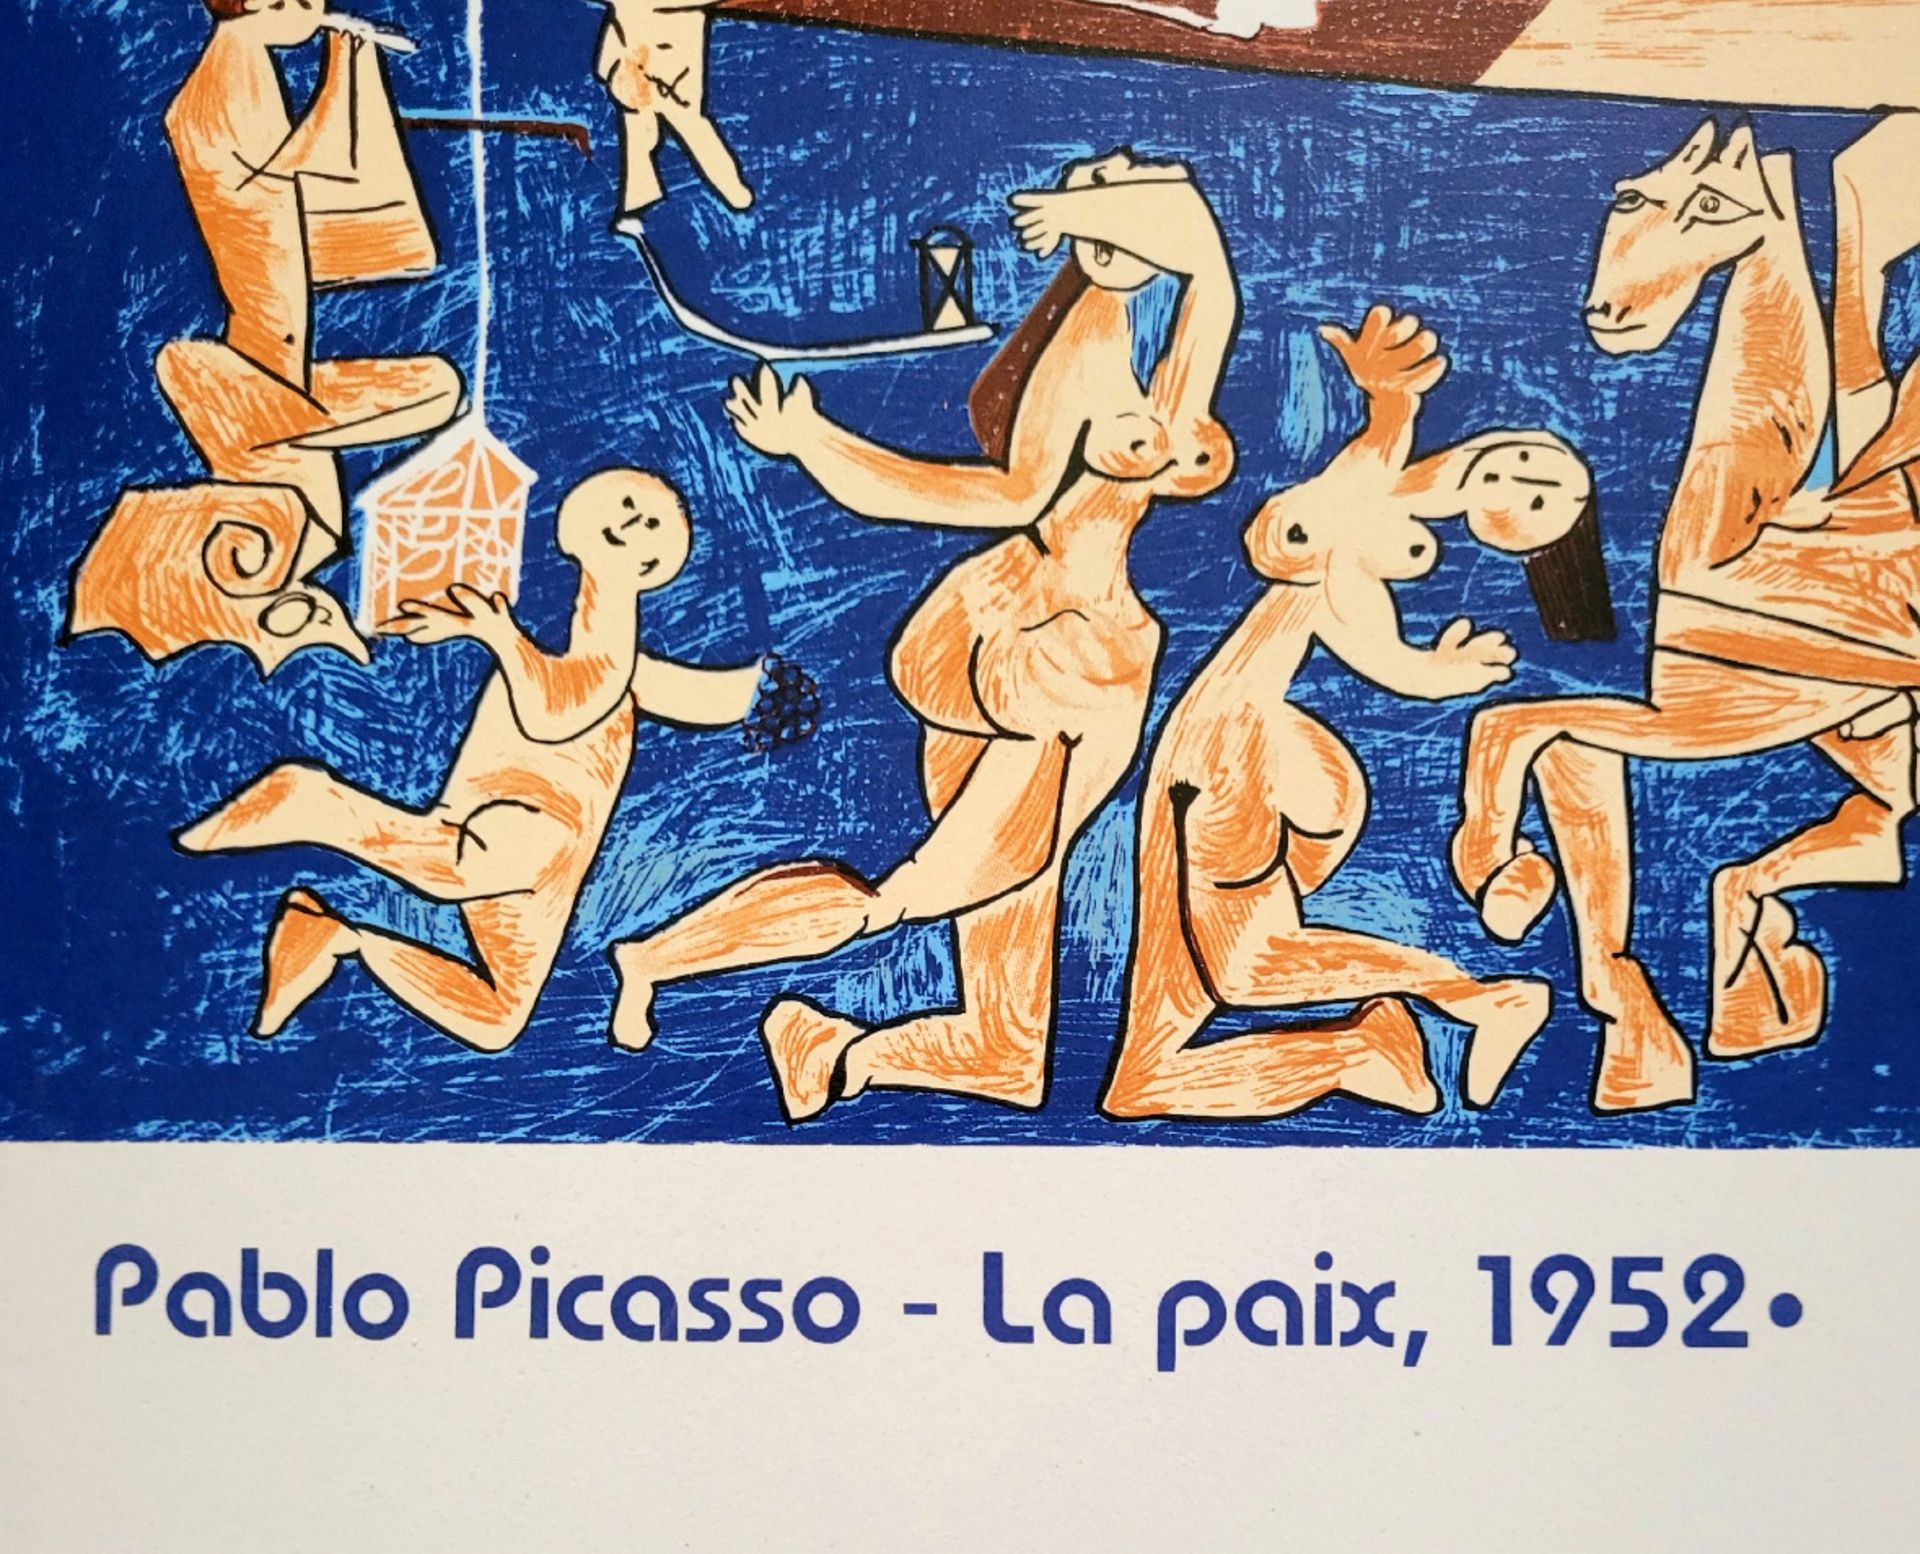 Pablo Picasso (1881-1973), Ceramics - Image 3 of 4